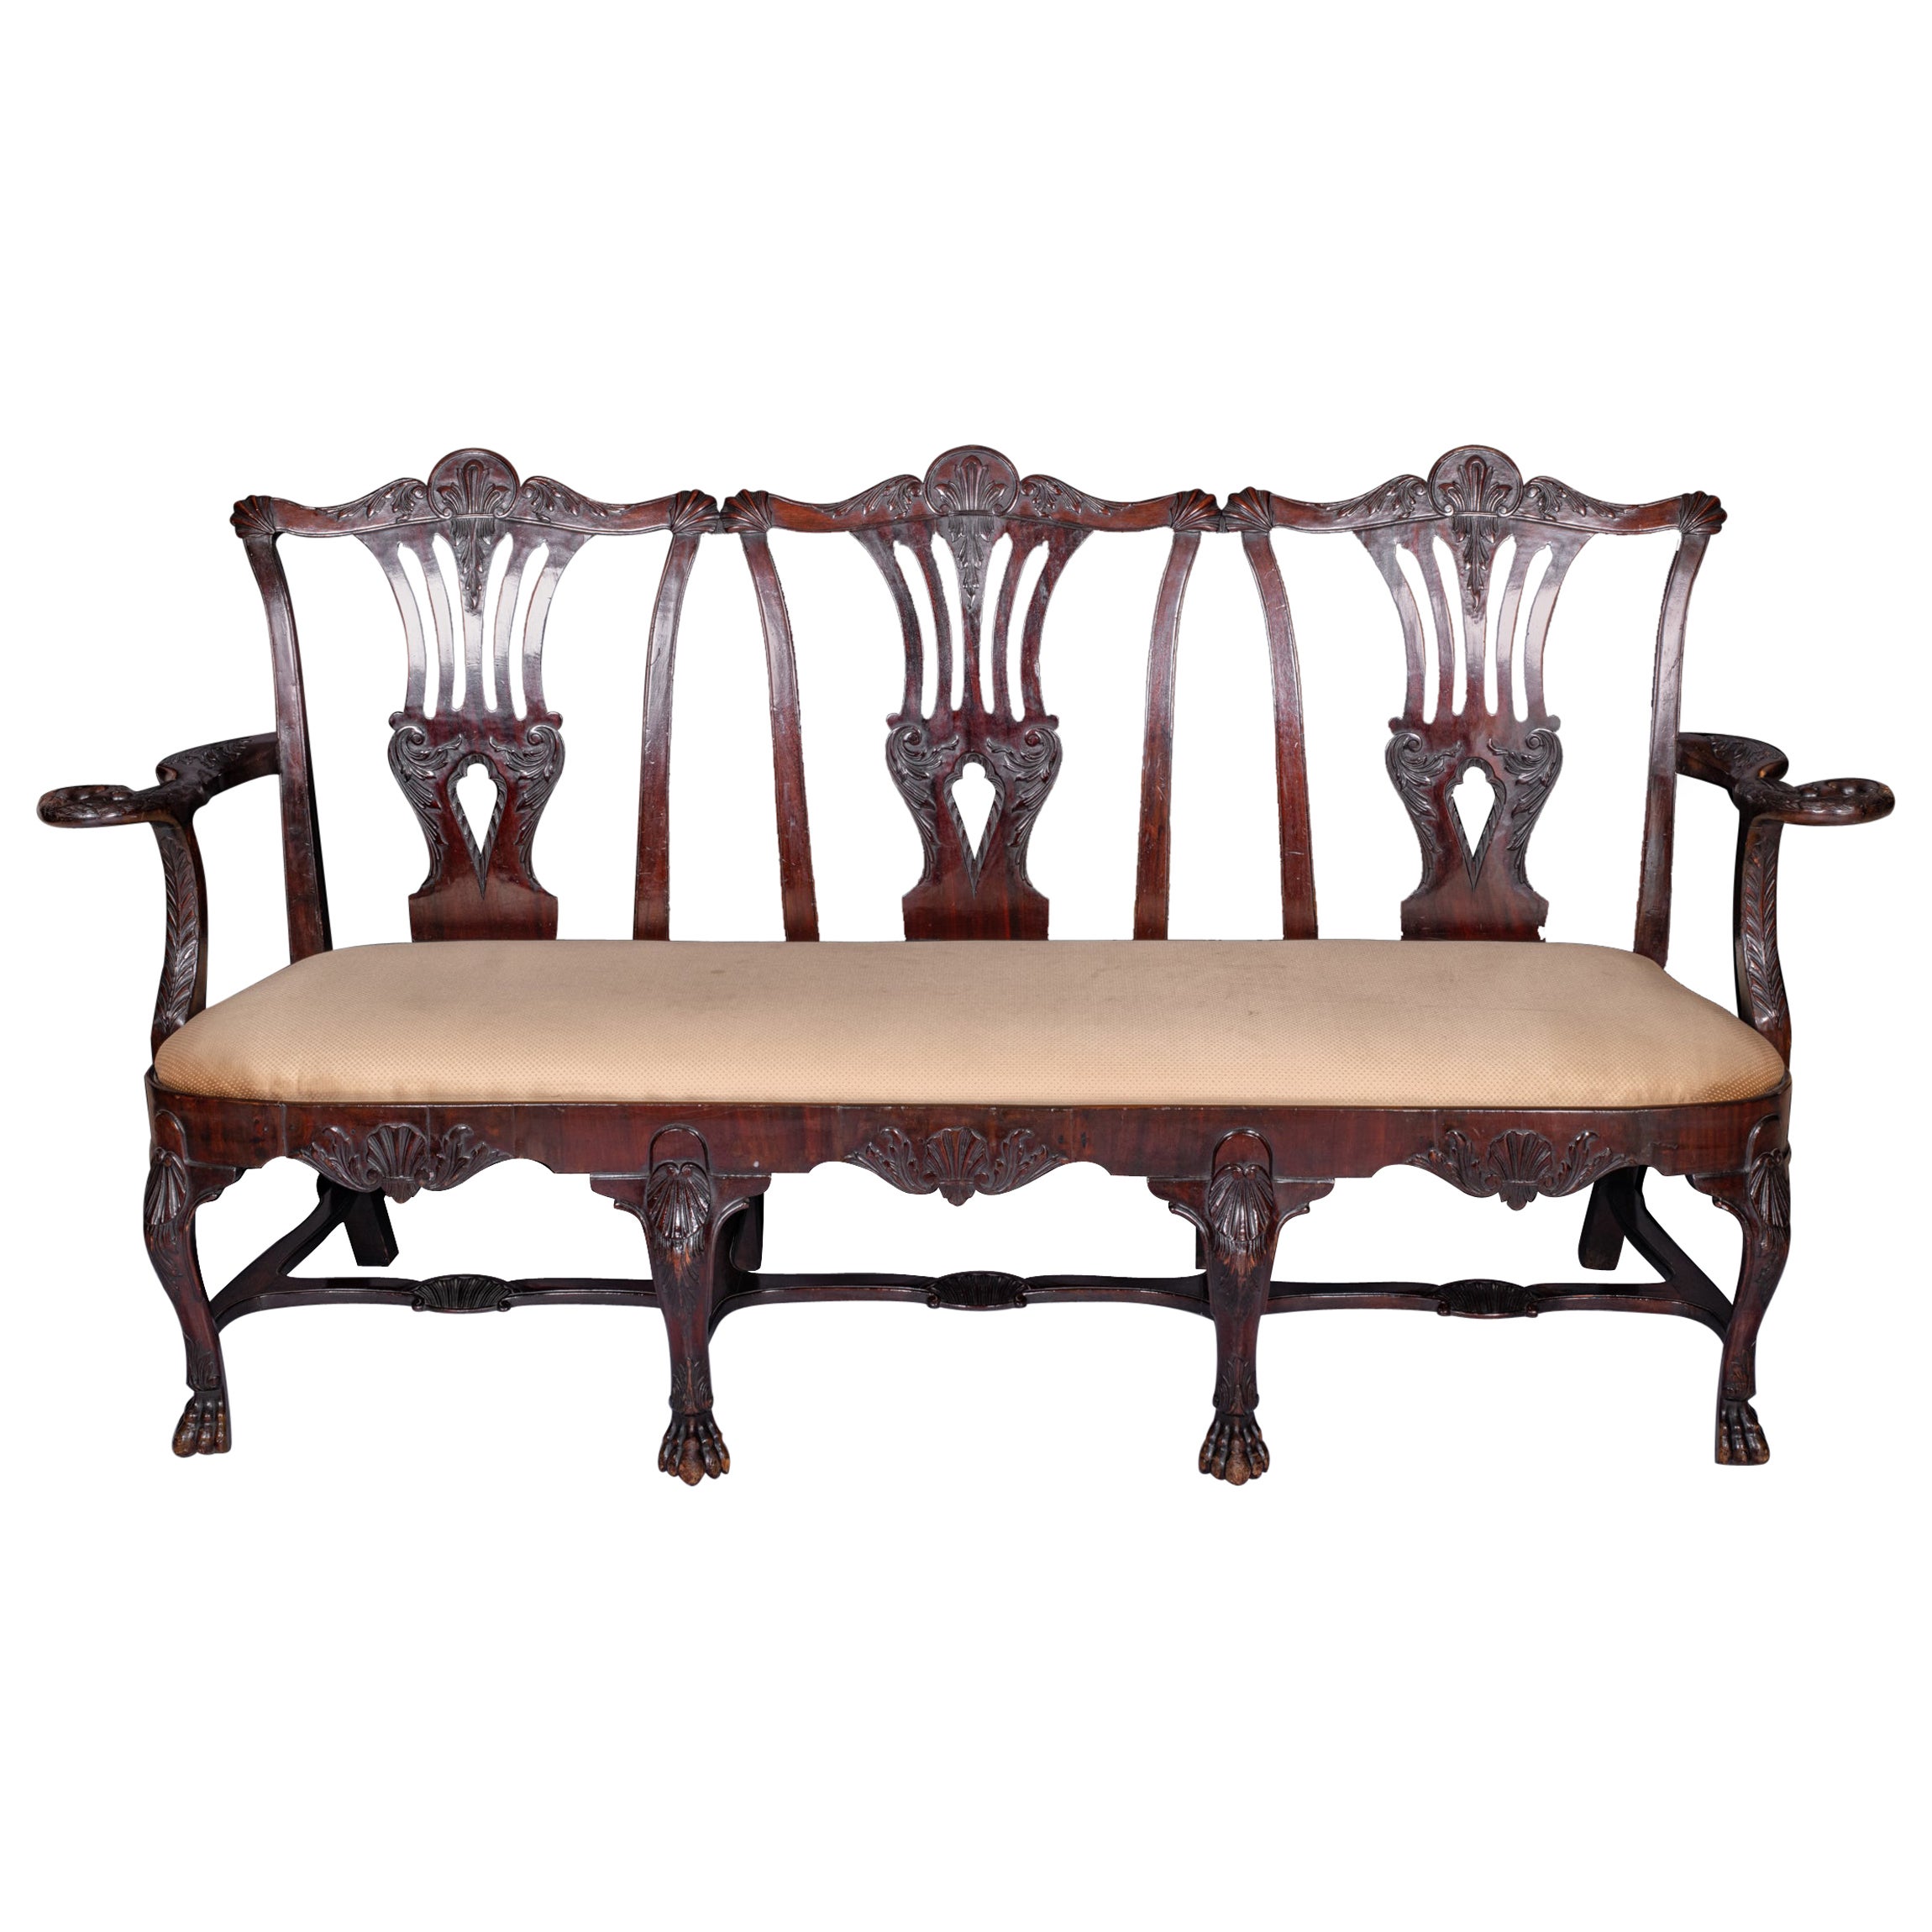 Settee irlandaise du 19ème siècle de style George III à trois chaises à dossier triplé par un majordome de Dublin